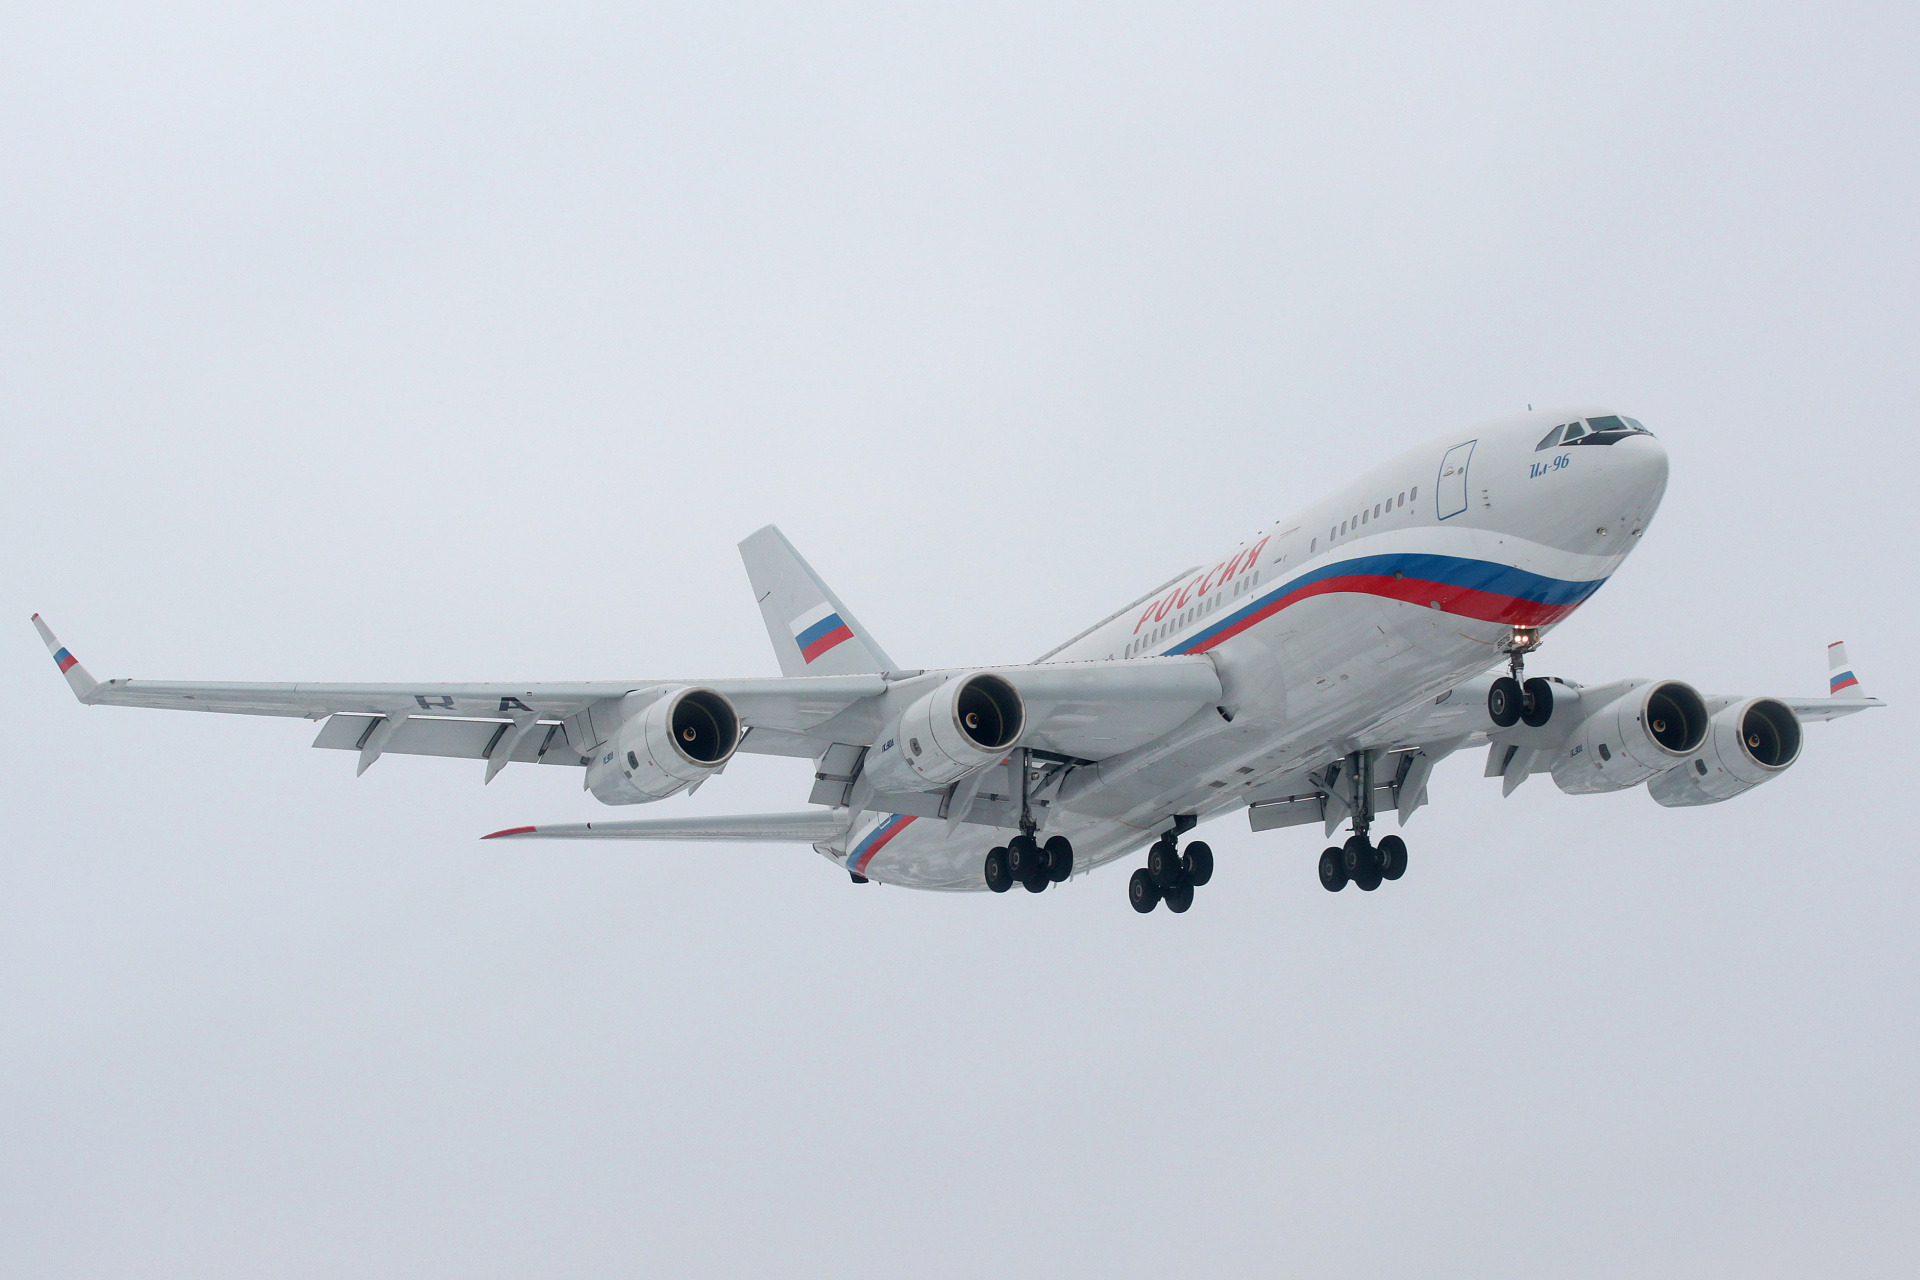 RA-96016, Russia State Transport Company (Aircraft » EPWA Spotting » Ilyushin Il-96)